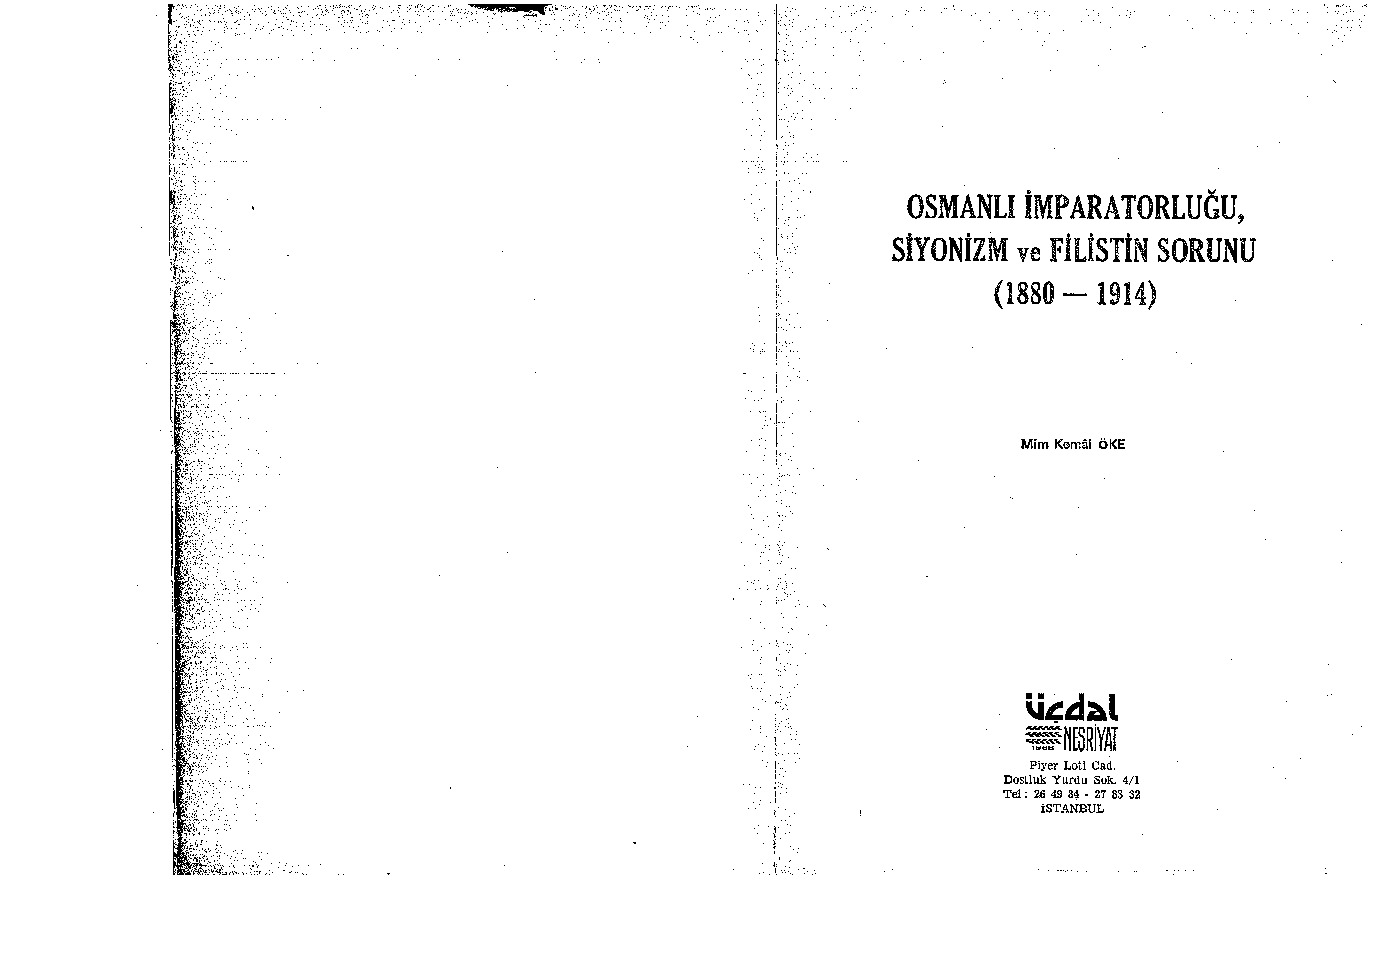 Osmanlı Impiraturluğu-Siyonizm Ve Filistin Sorunu-1880-1914-Mim Kemal Öke-1982-191s